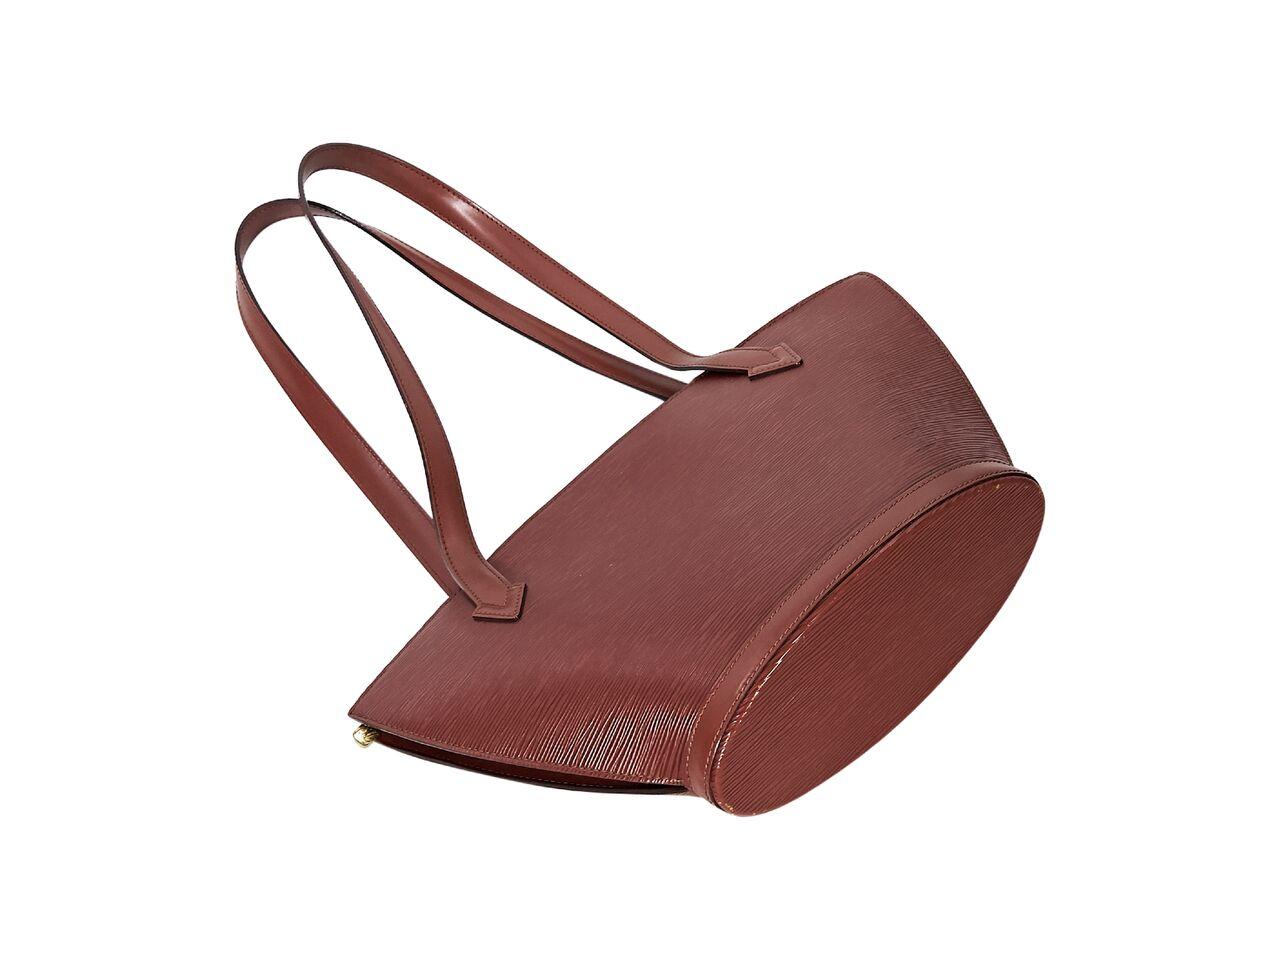 Product details:  Tan epi leather shoulder bag by Louis Vuitton.  Dual shoulder straps.  Top zip closure.  Lined interior with inner slide pocket.  Goldtone hardware.  13.5